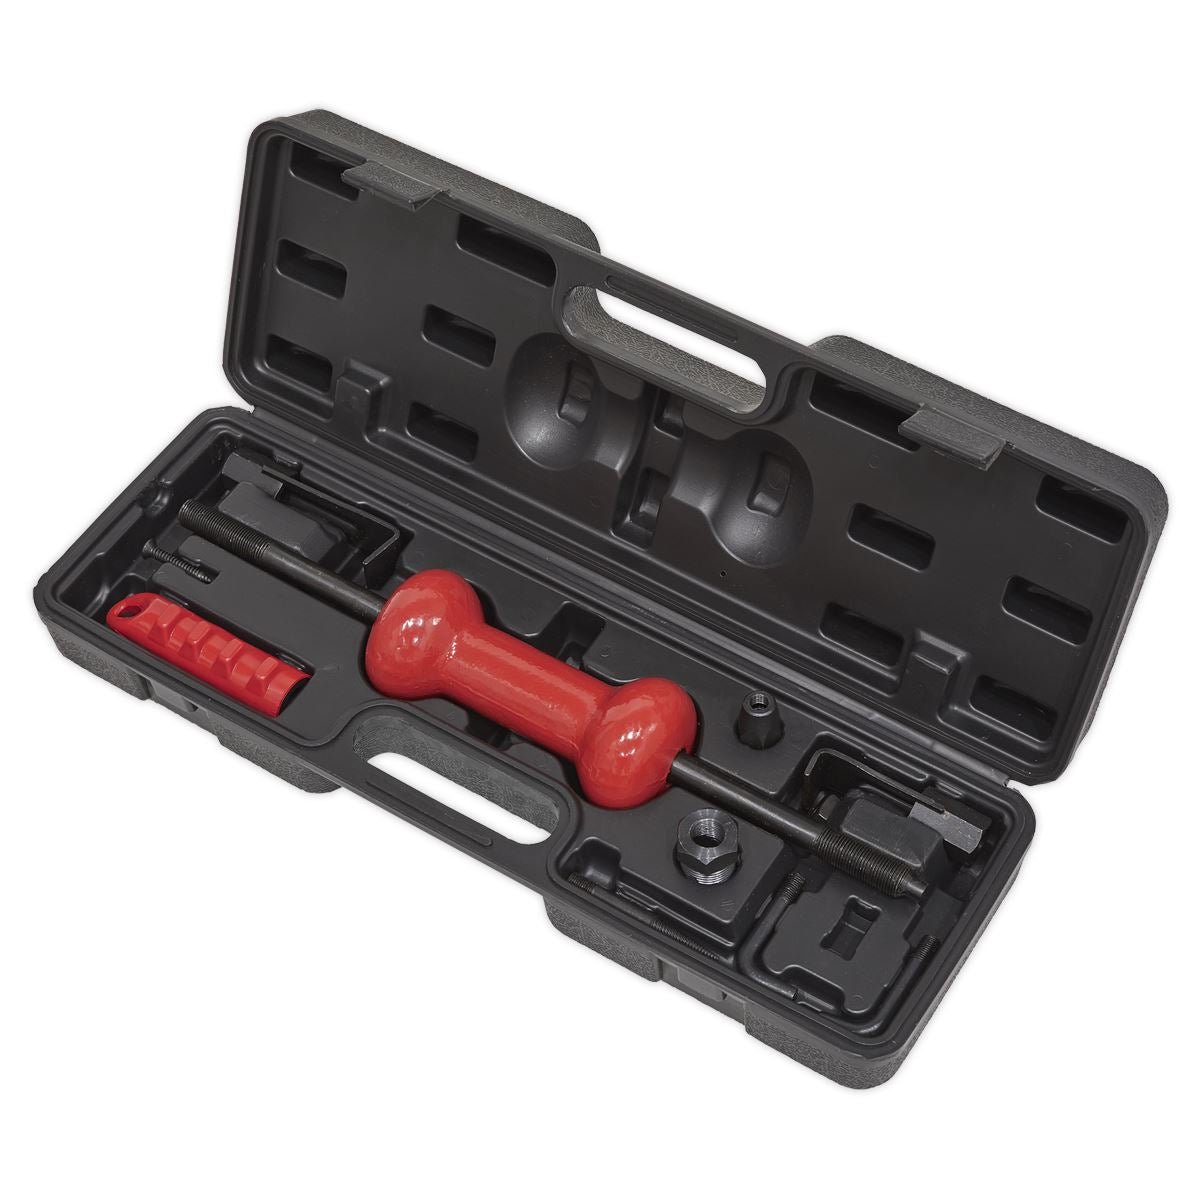 Sealey Slide Hammer Kit Carry Case Hooks Adaptor Screws Dent Panel Puller 9pc